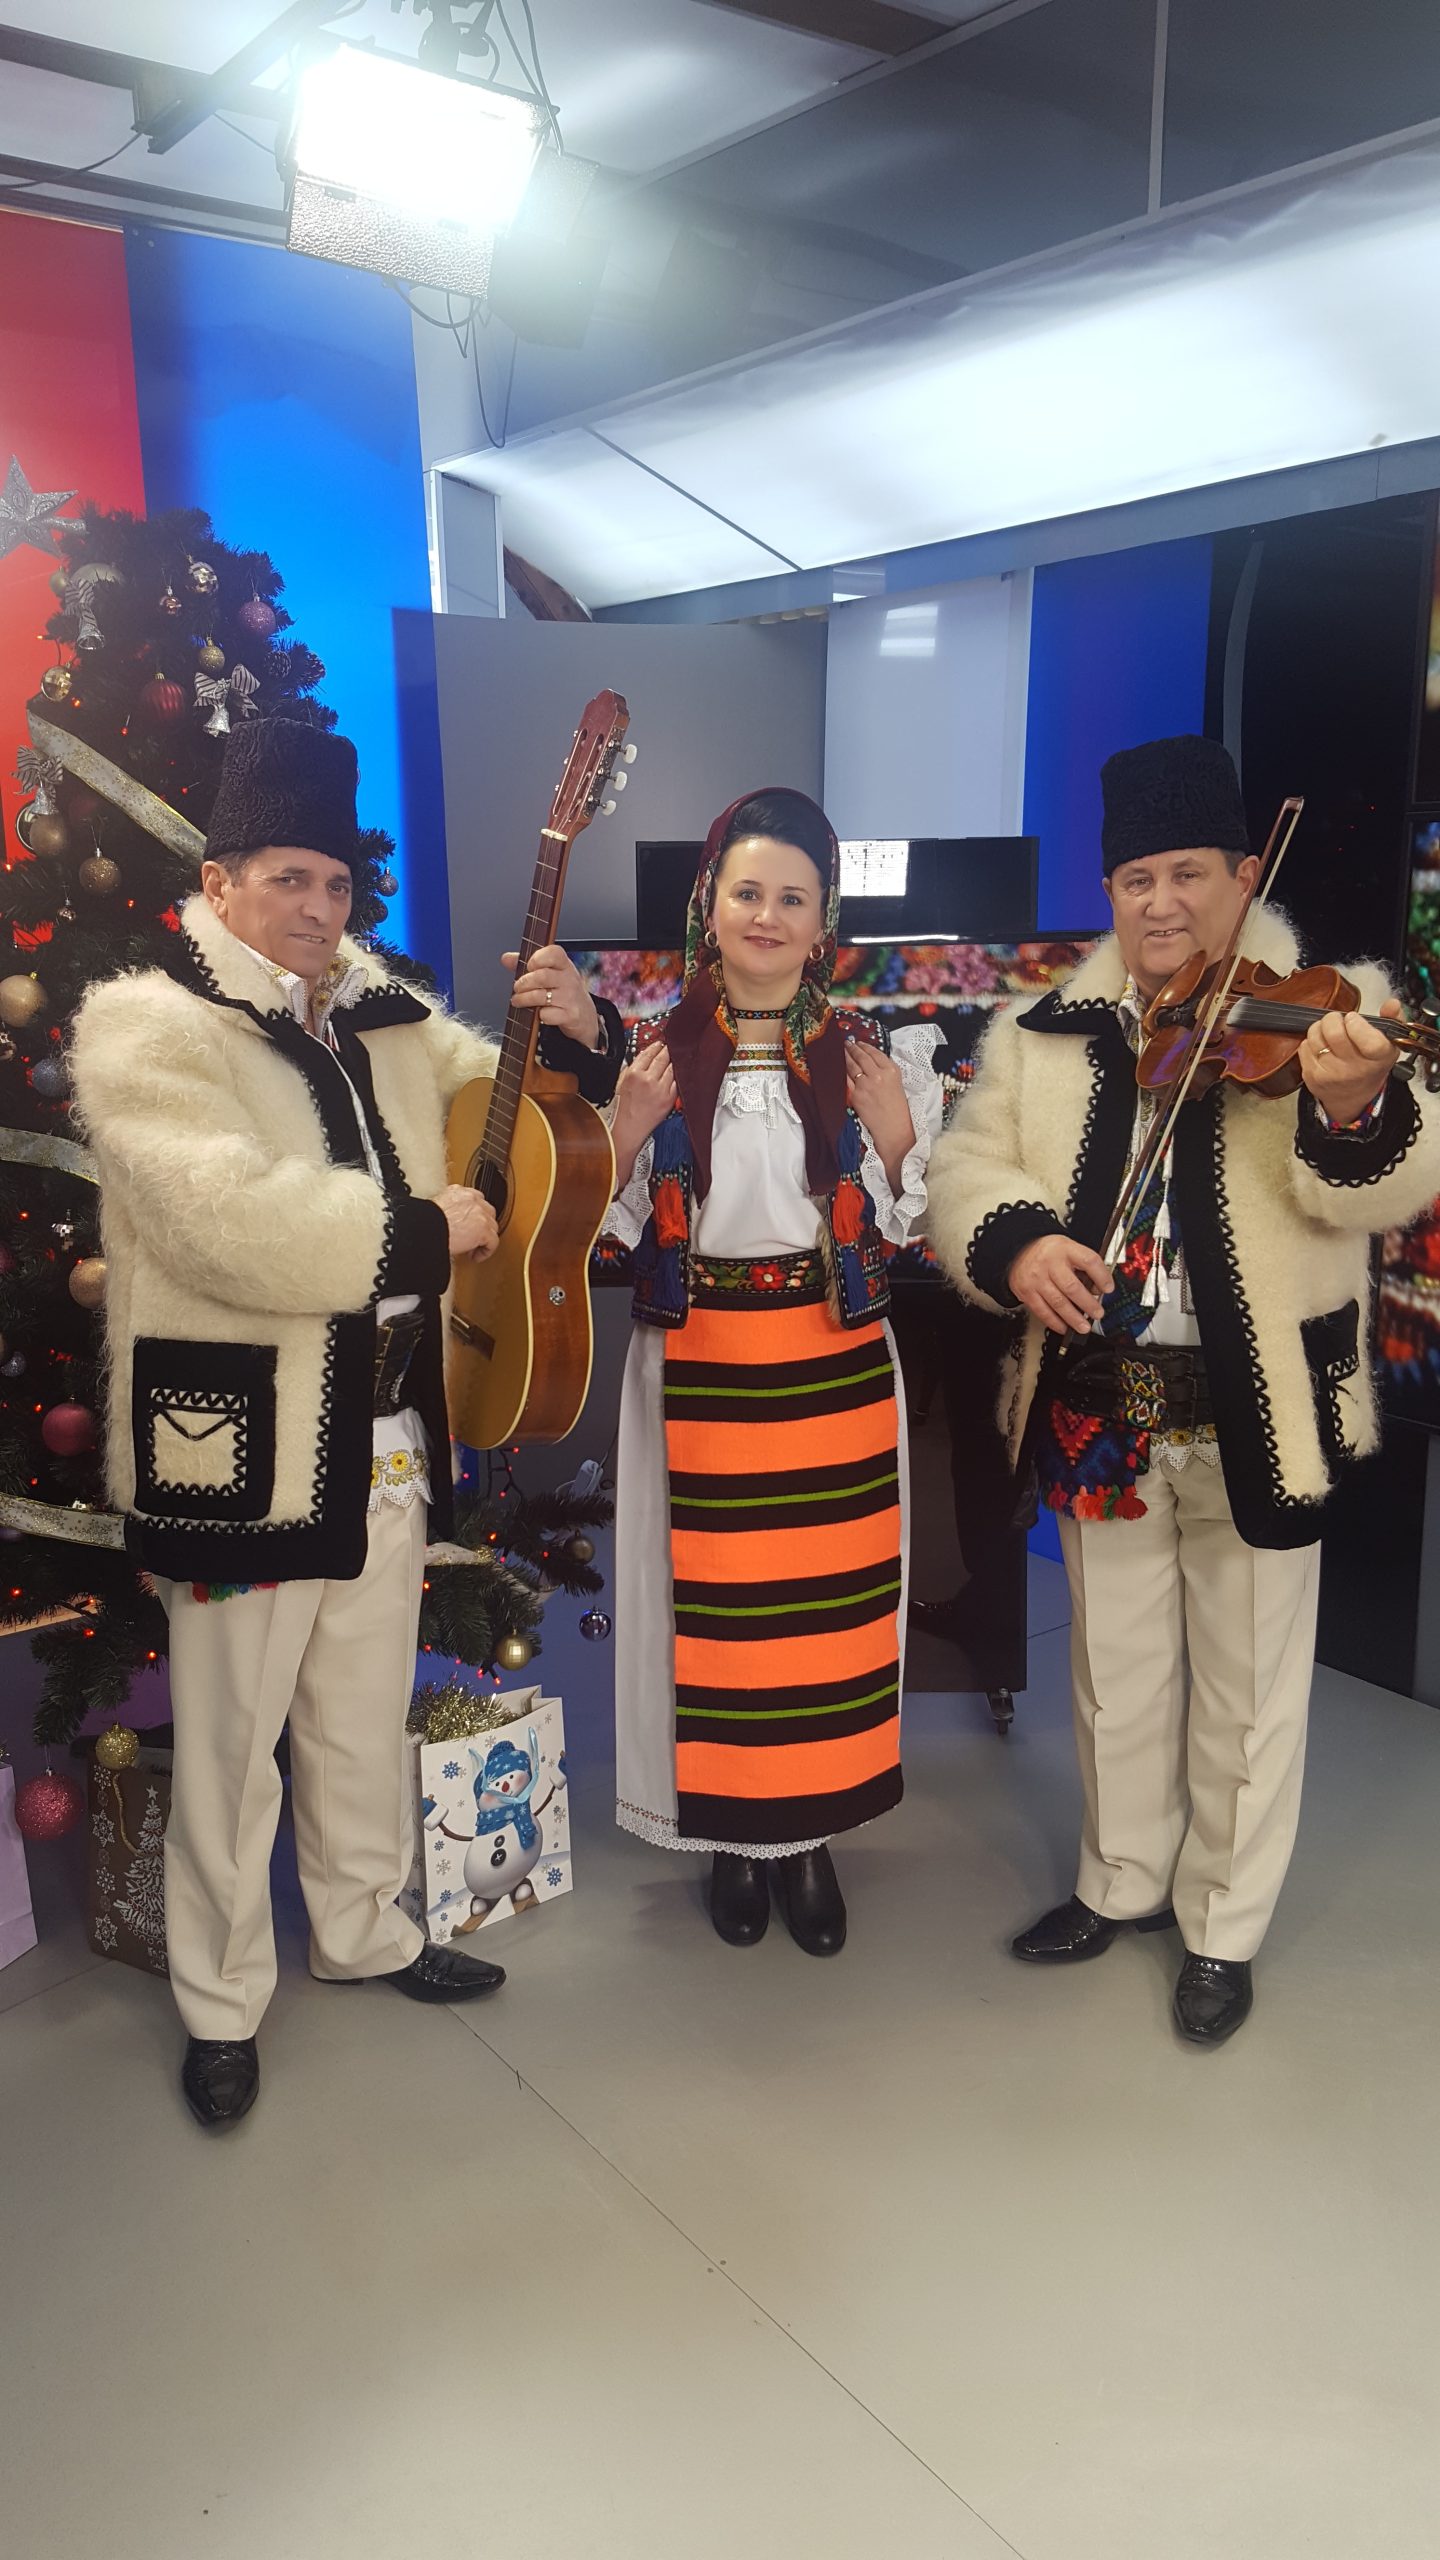 În studioul ITV, invitaţii de duminică din emisiunea Zone folclorice vă aşteaptă la un adevărat spectacol şi pentru că suntem în pragul sărbătorilor de iarnă, ne invită să colindăm alături de ei.